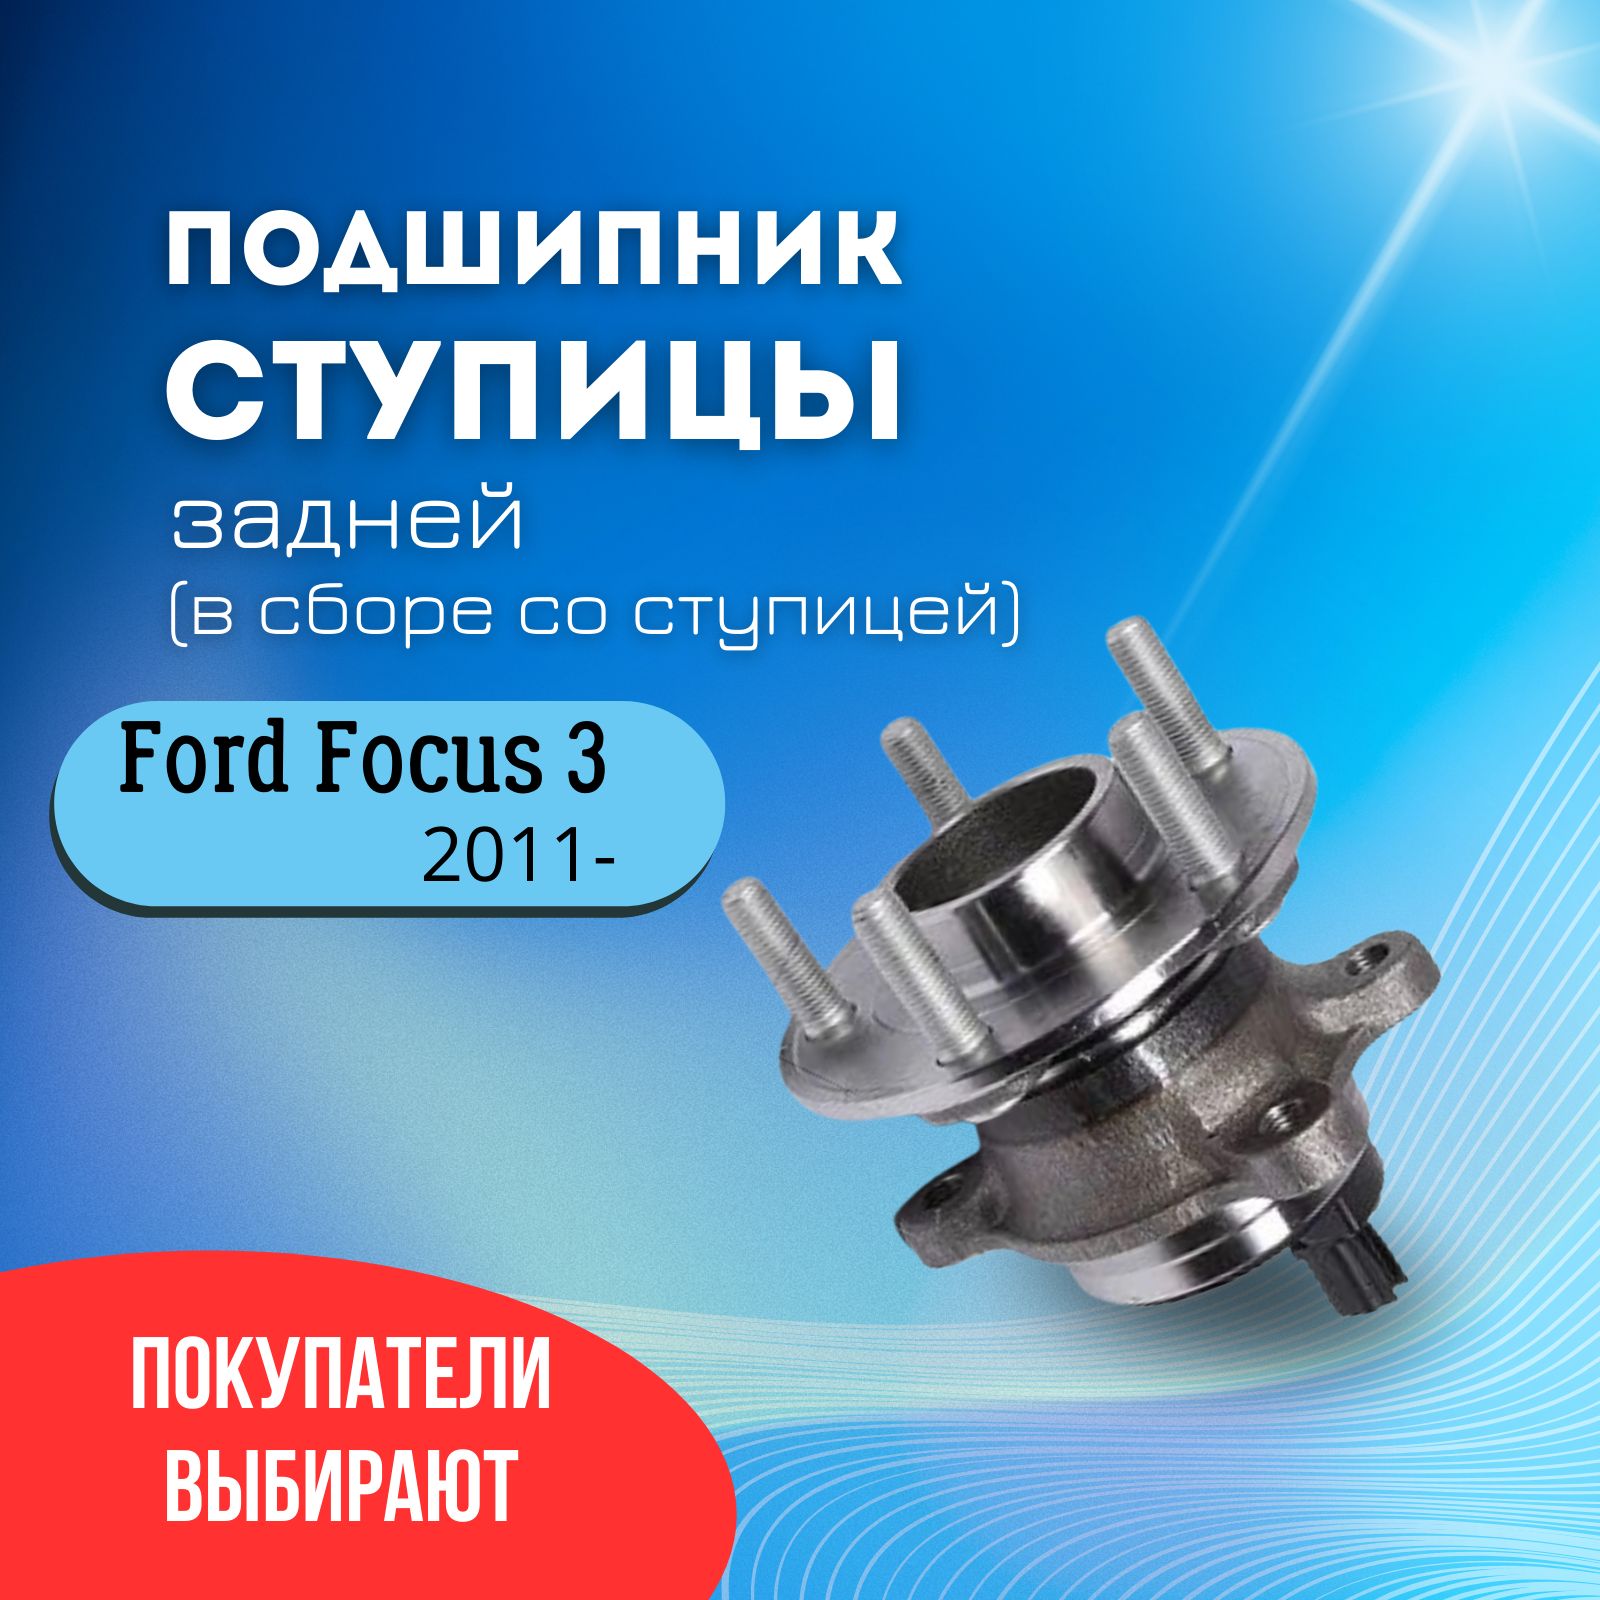 Особенности конструкции ступицы Ford Focus 2